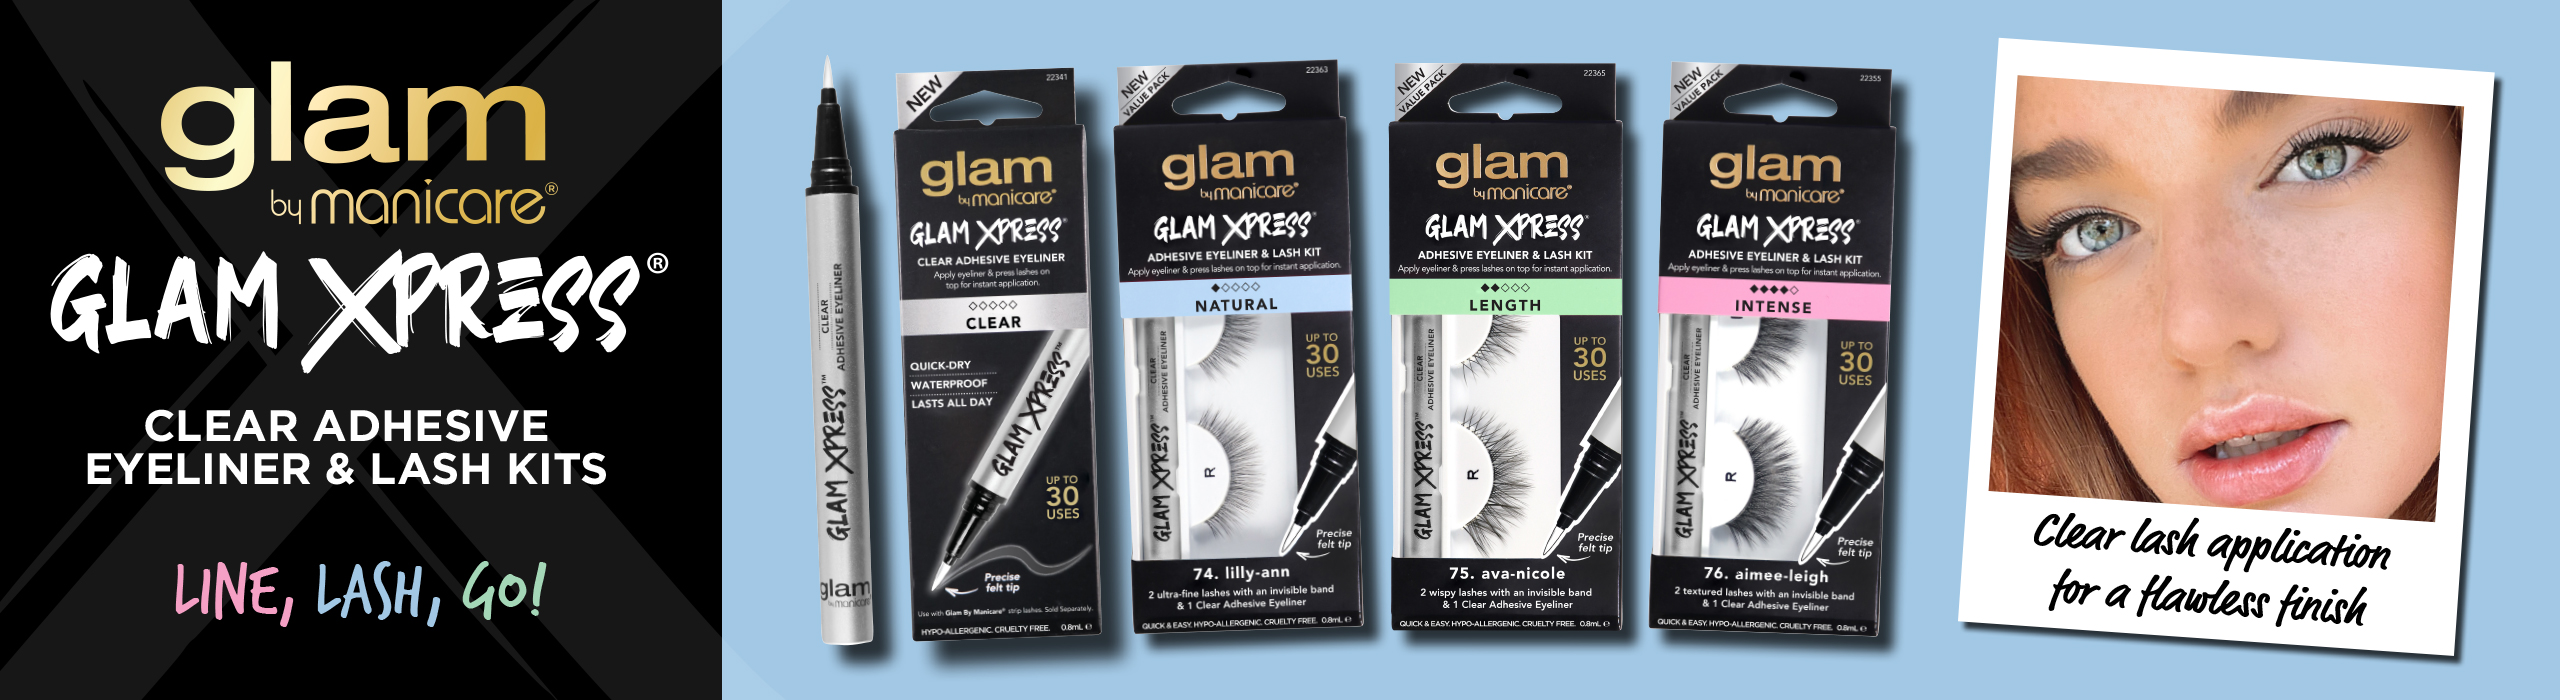 Glam Xpress Adhesive Liner and Lash Kits